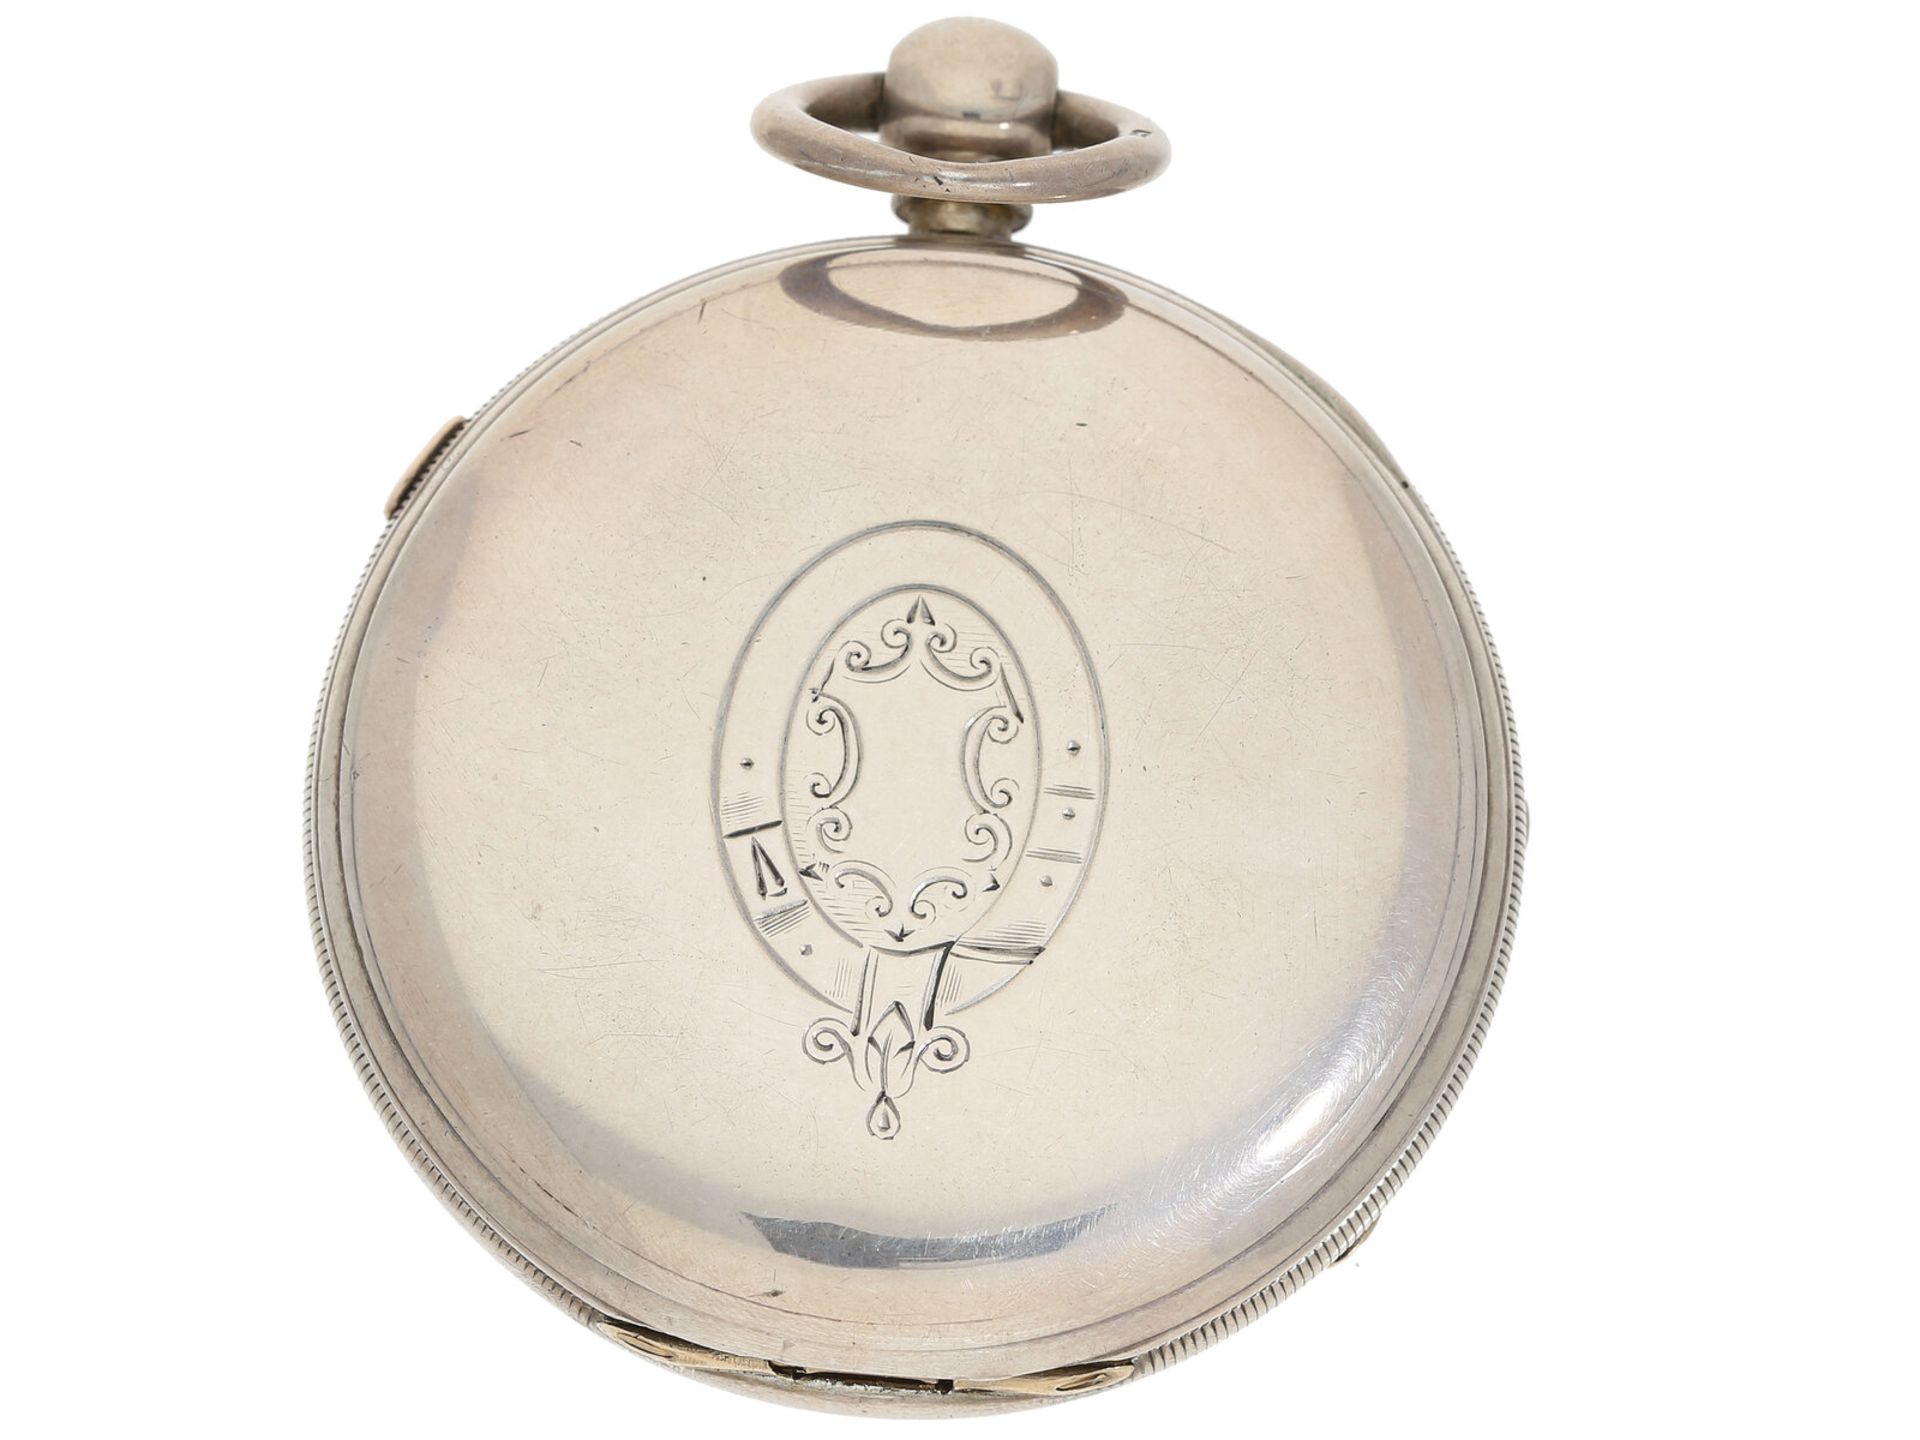 Taschenuhr: großer englischer Marine-Chronograph, Beobachtungsuhr mit anhaltbarer Sekunde, Aaaronson - Image 2 of 3